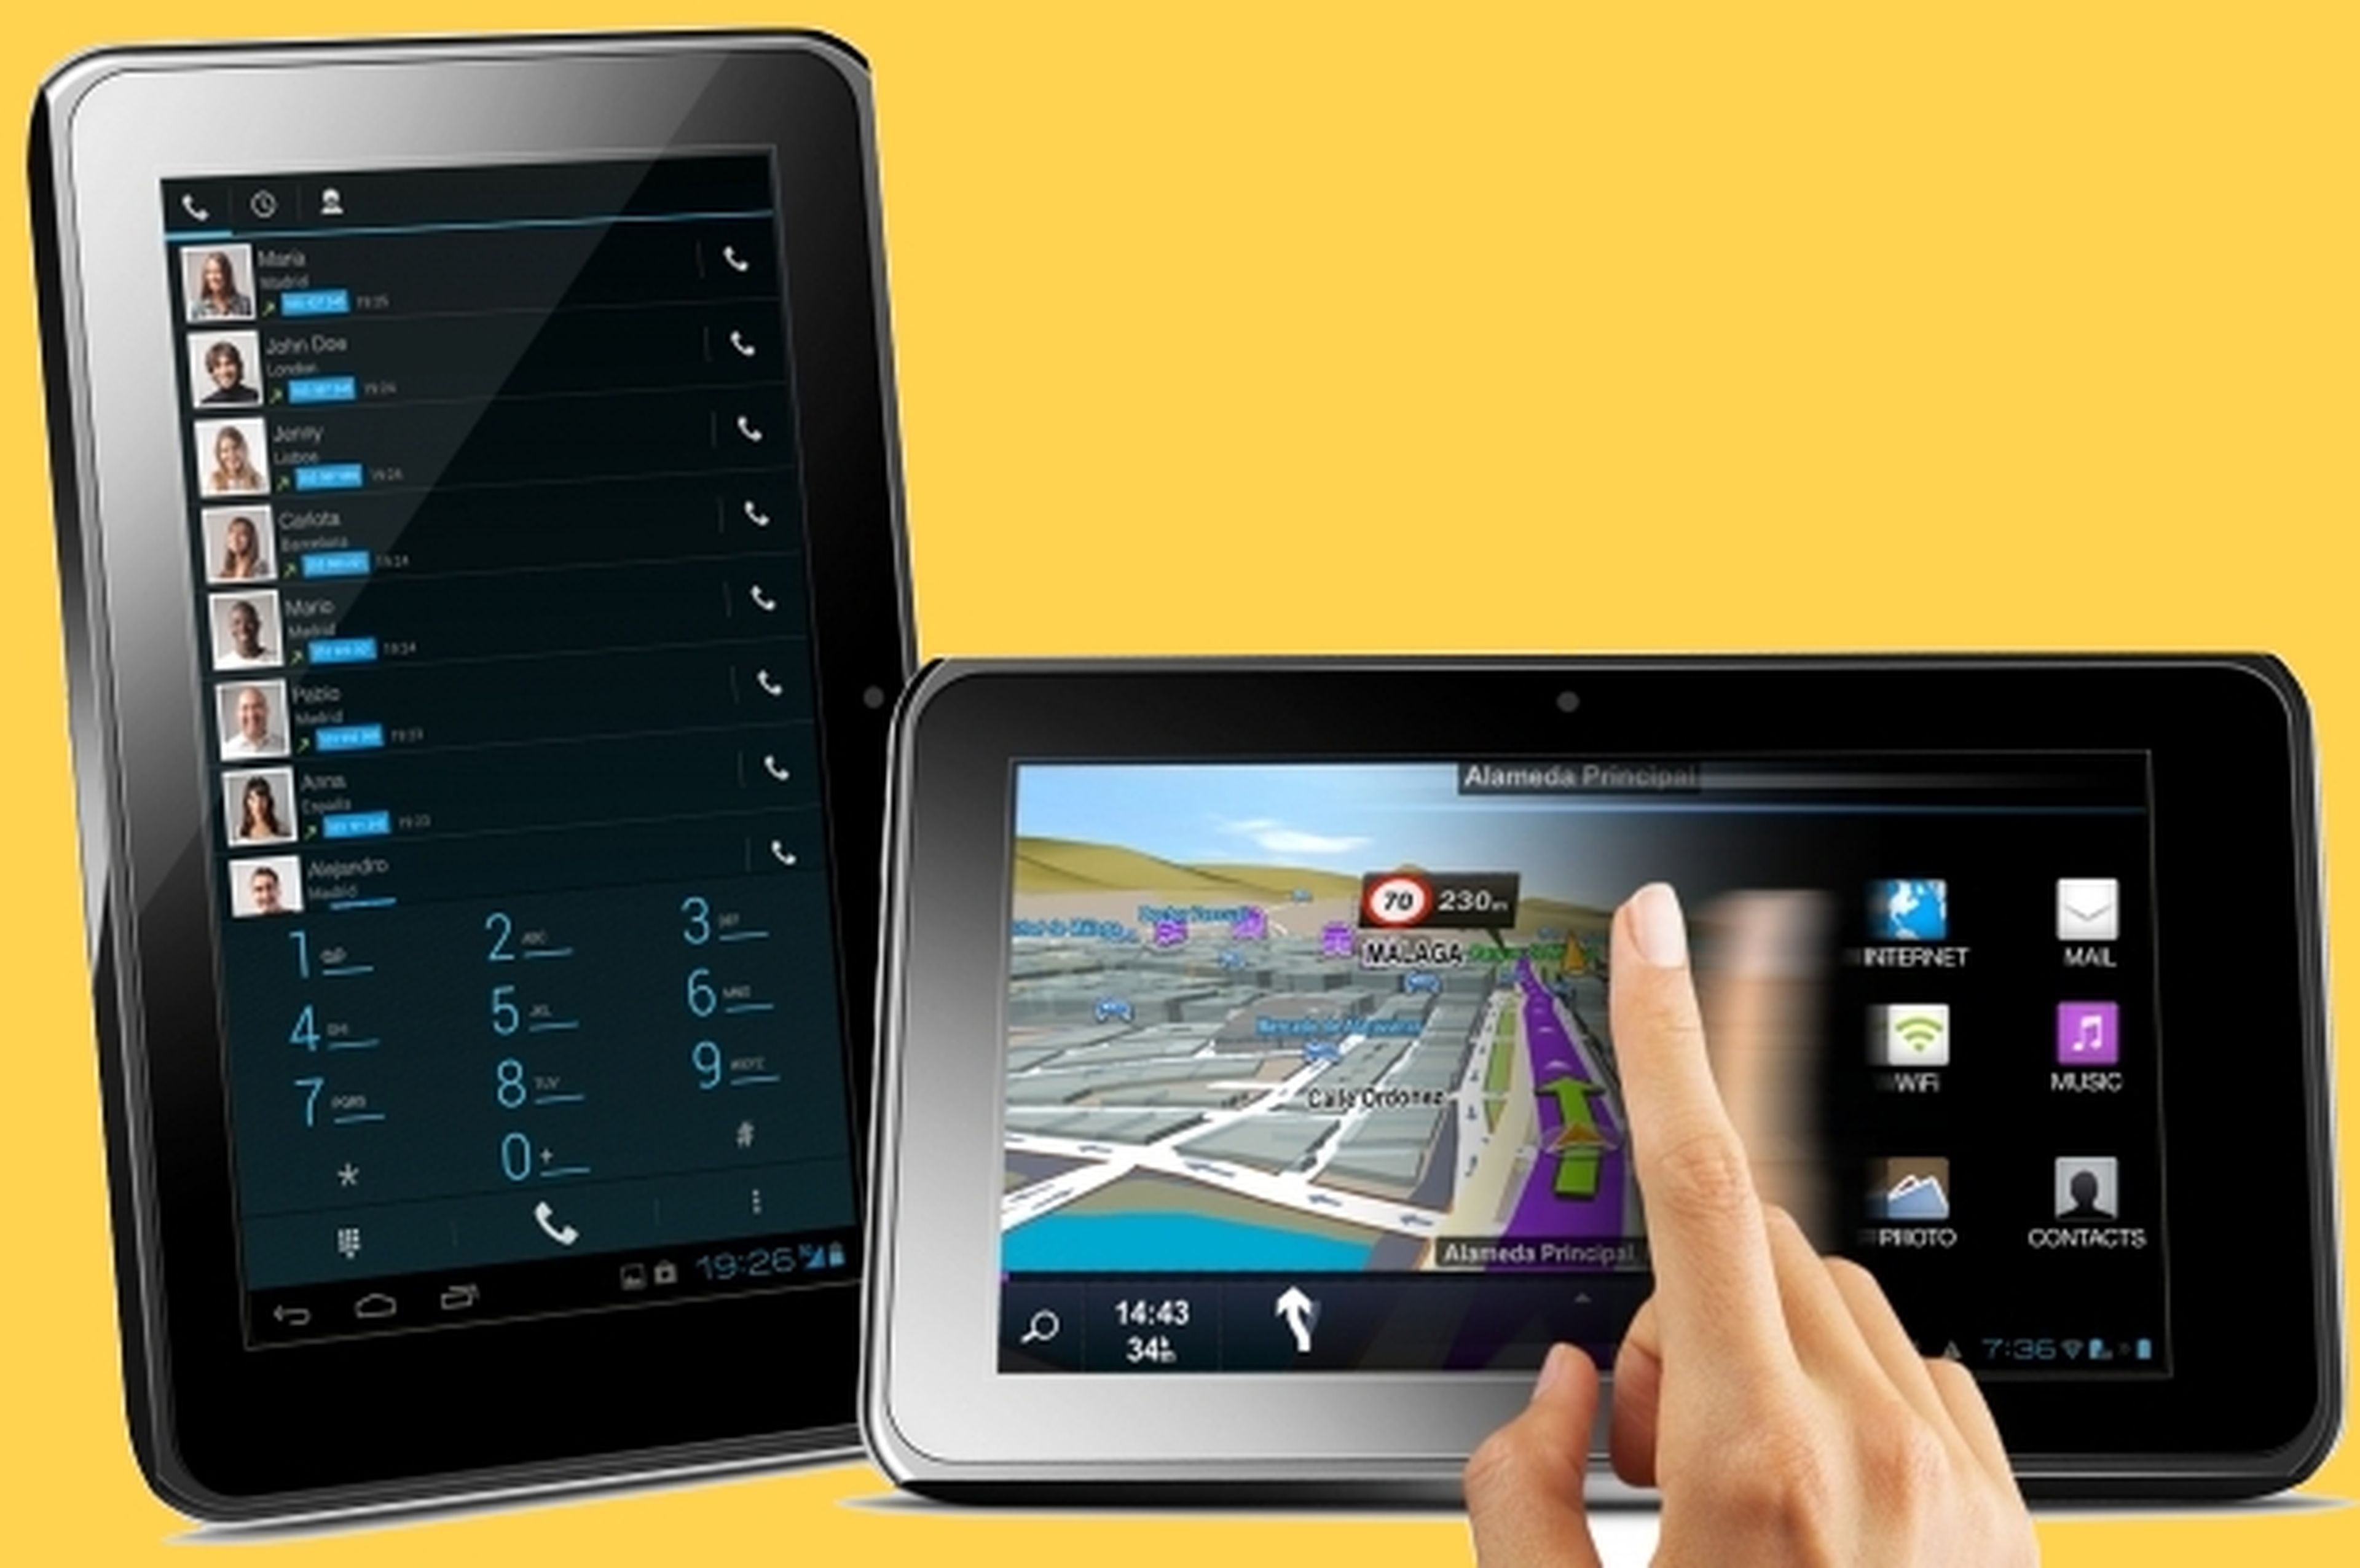 Vexia Navlet 3G, híbrido de smartphone, tablet y GPS